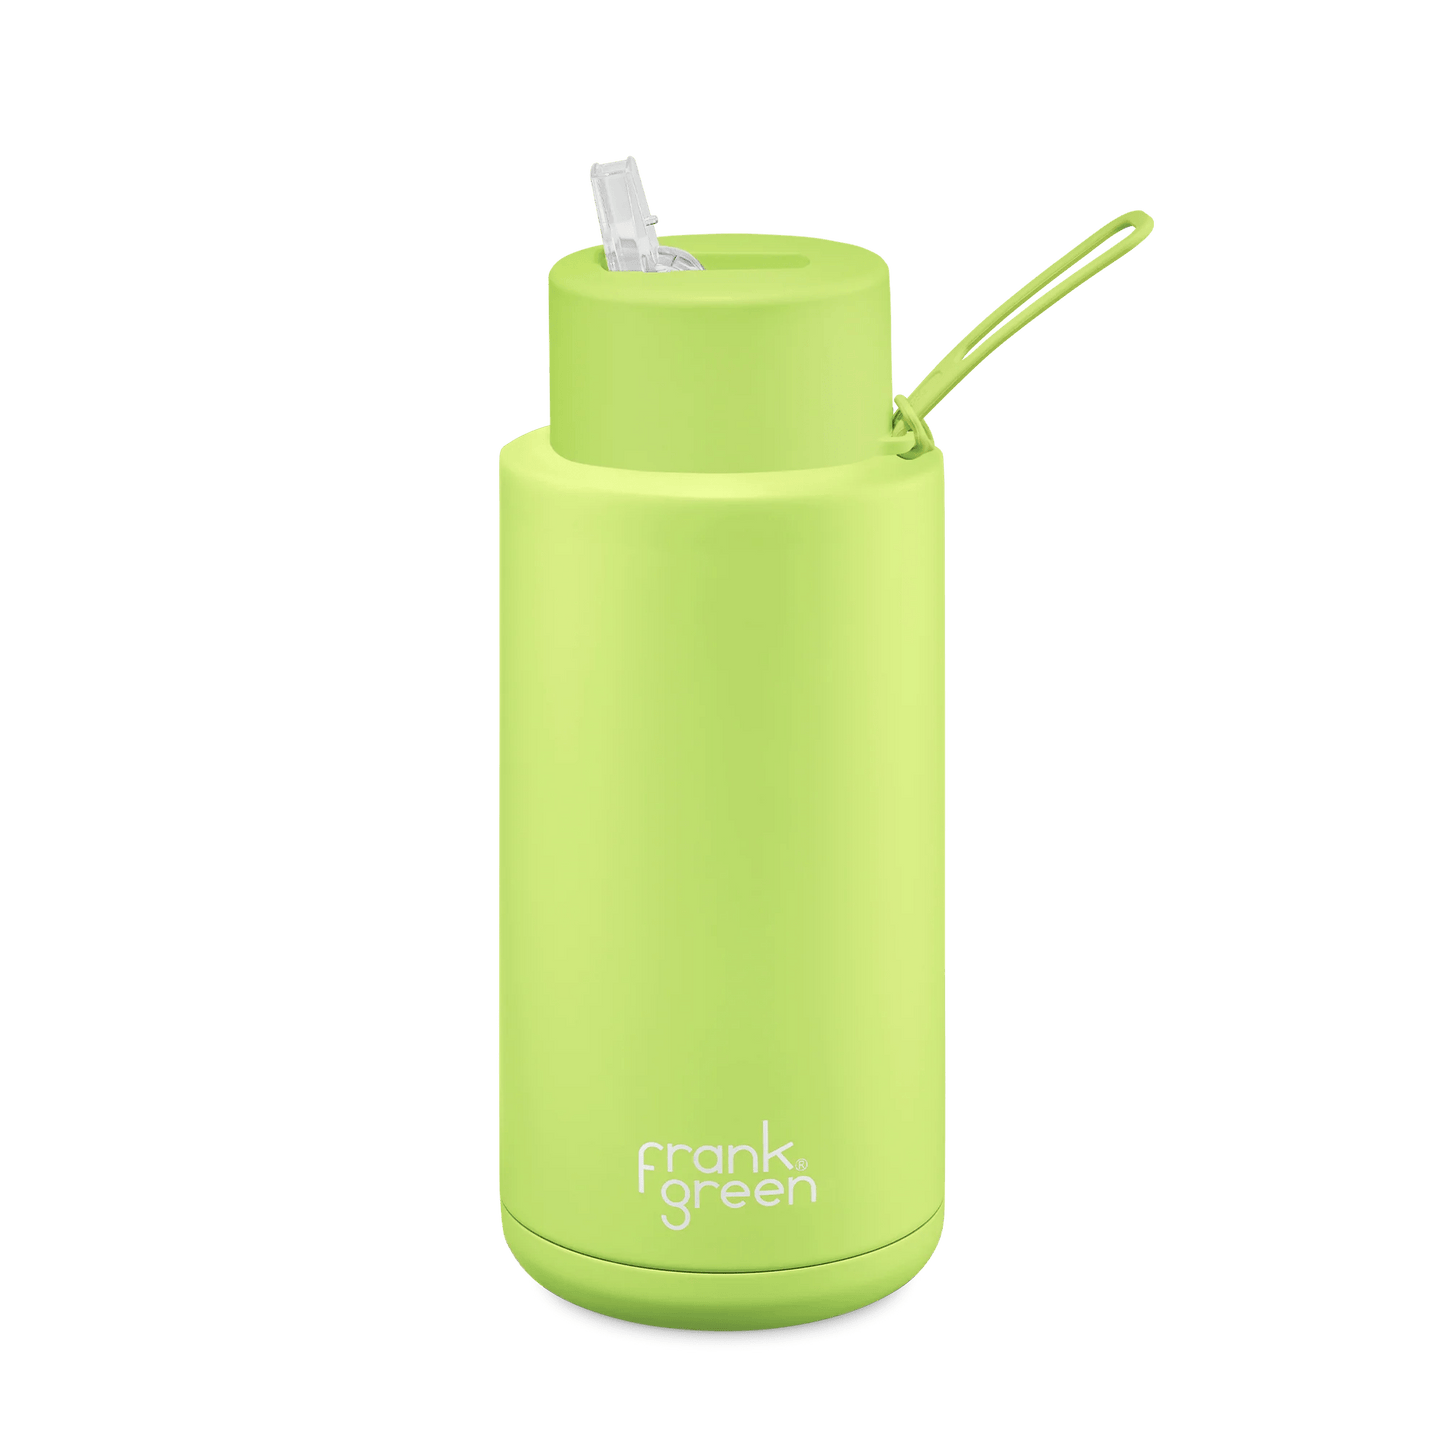 Frank Green Limited Edition Ceramic Reusable Bottle - 34oz/1000ml Drink Bottles